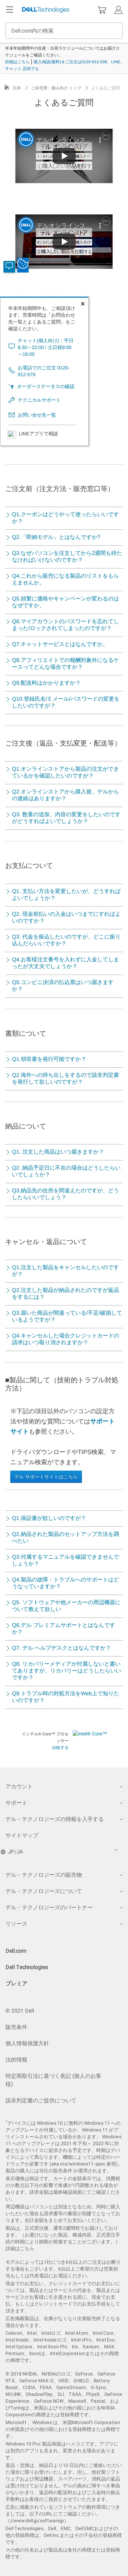 キャプチャ画面 会社名:デル株式会社プロジェクト名:DELL JAPAN(個人向け) 画面名:質問・Q&A デバイス名:SPカテゴリ:EC・オンラインショップタグ:質問・Q&A,SP